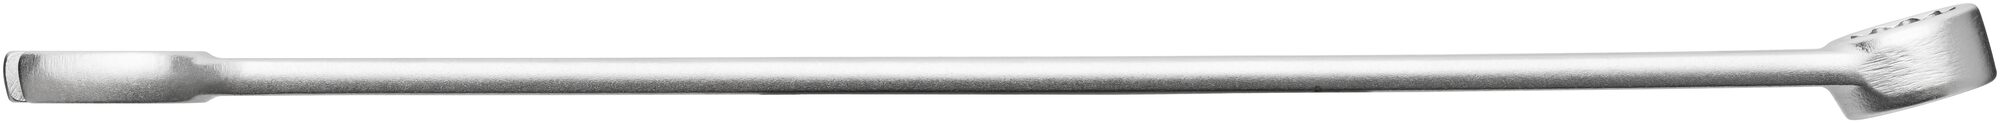 HAZET Ring-Maulschlüssel · extra lang · schlanke Bauform 600LG/12 · Außen Doppel-Sechskant-Tractionsprofil · 10–32 · Werkzeuge: 12